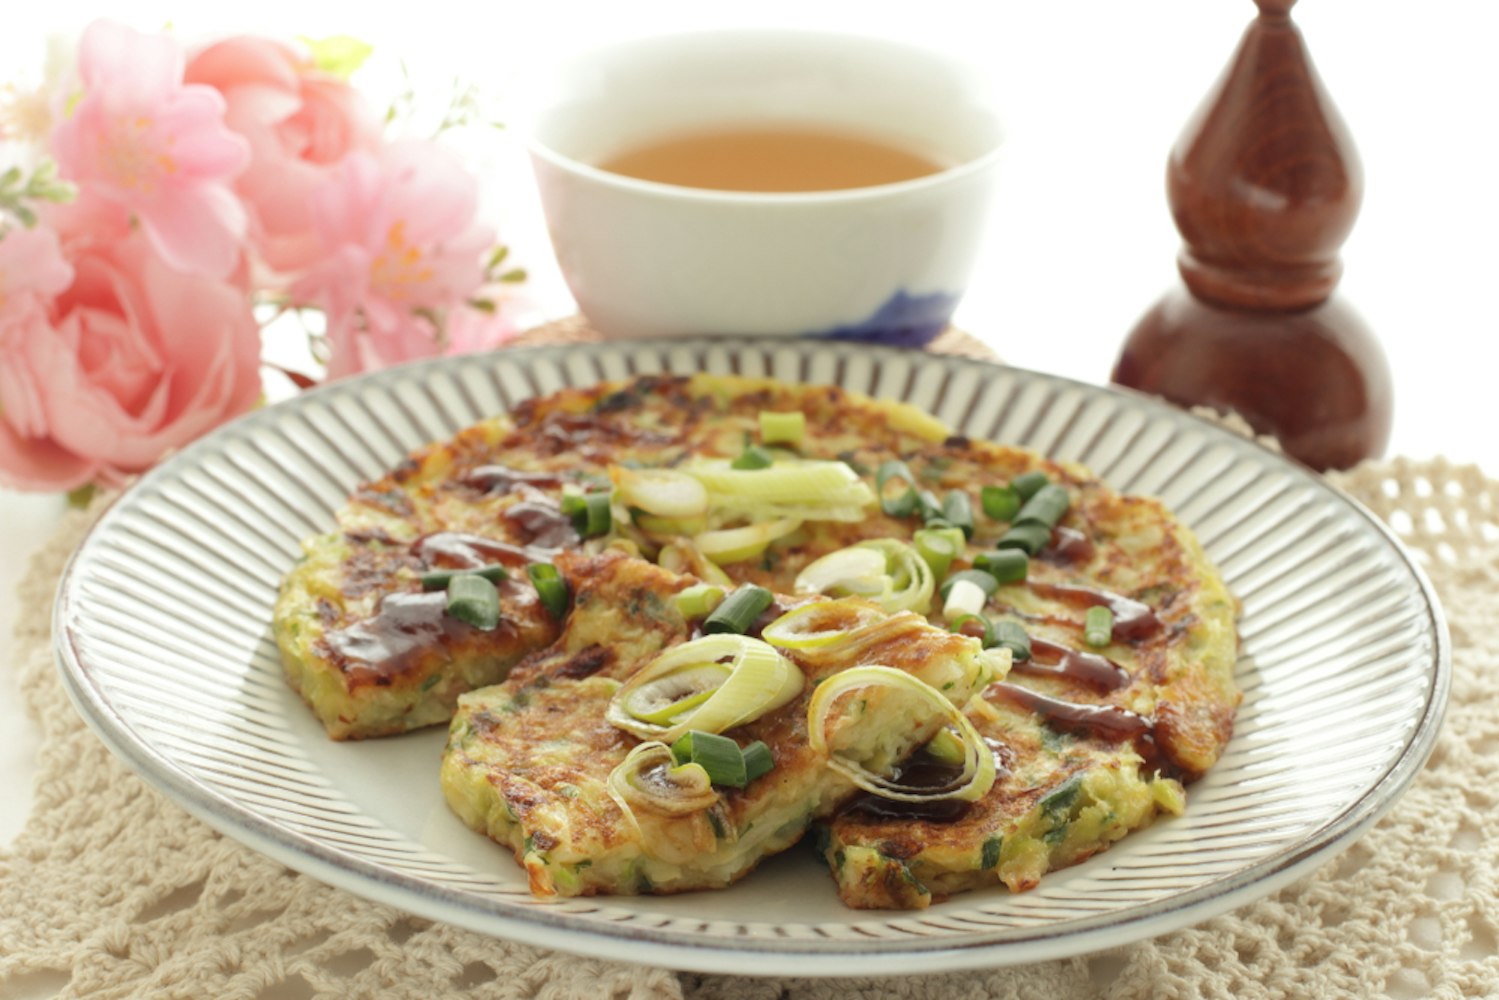 Japanese food, scallion pancake Negiyaki